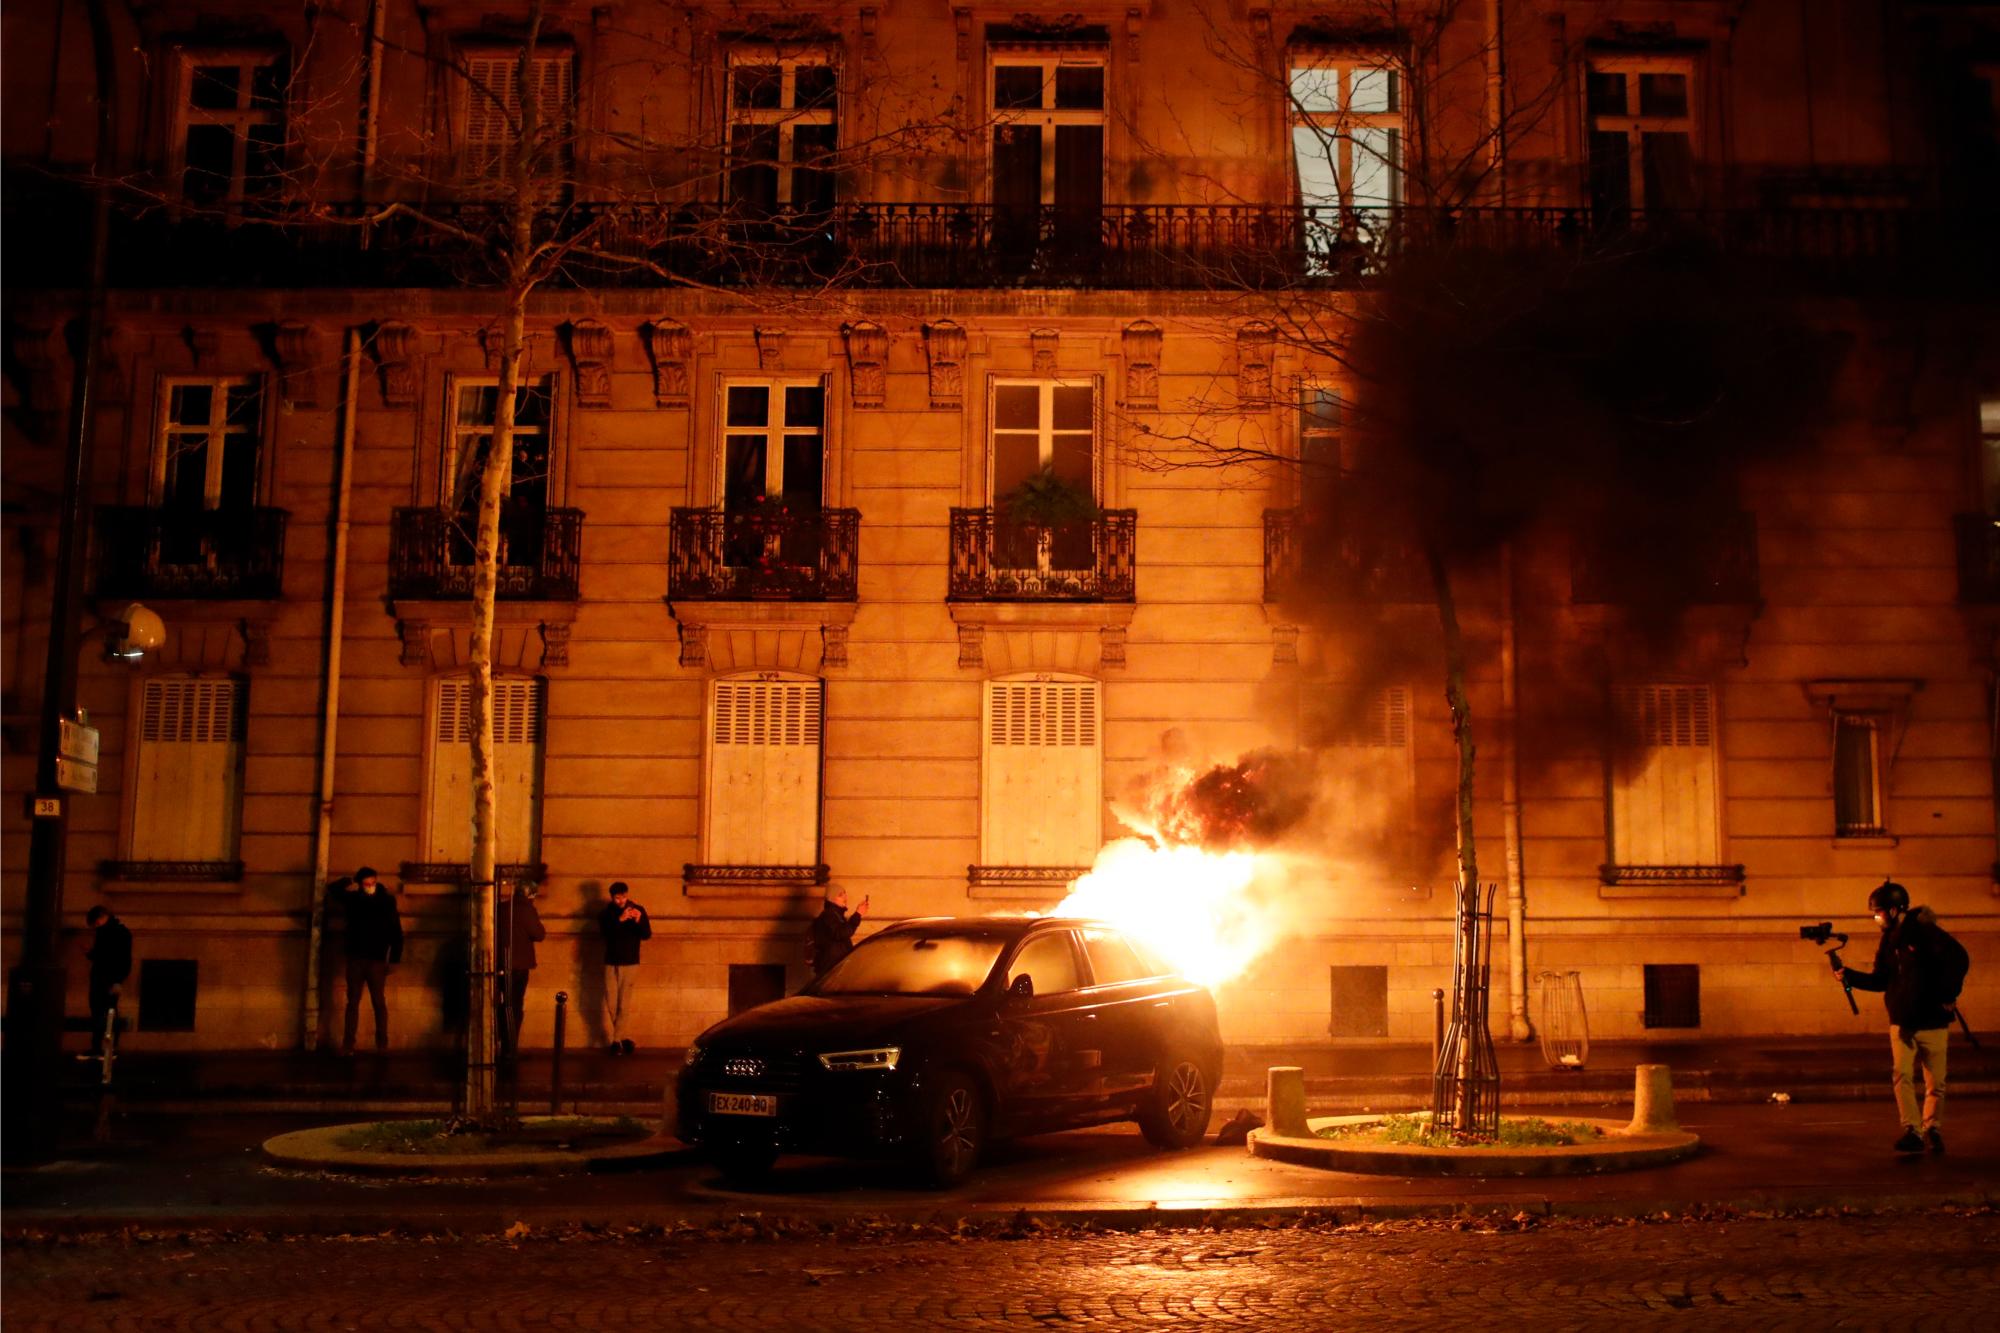 Un carro ardiente encendido por los manifestantes se observa frente a un edificio en París, Francia.